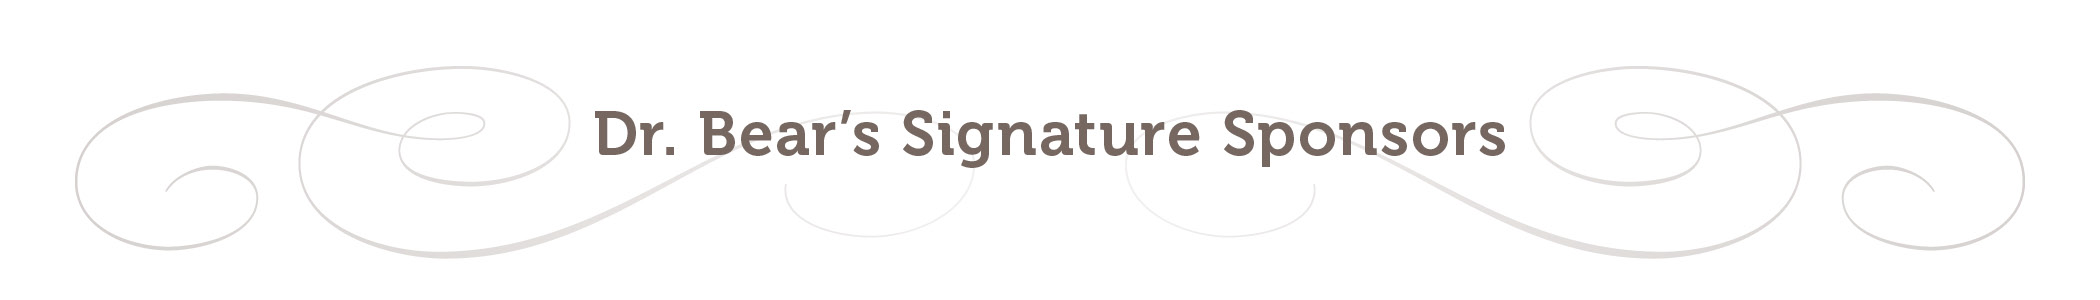 Signature S HEADER